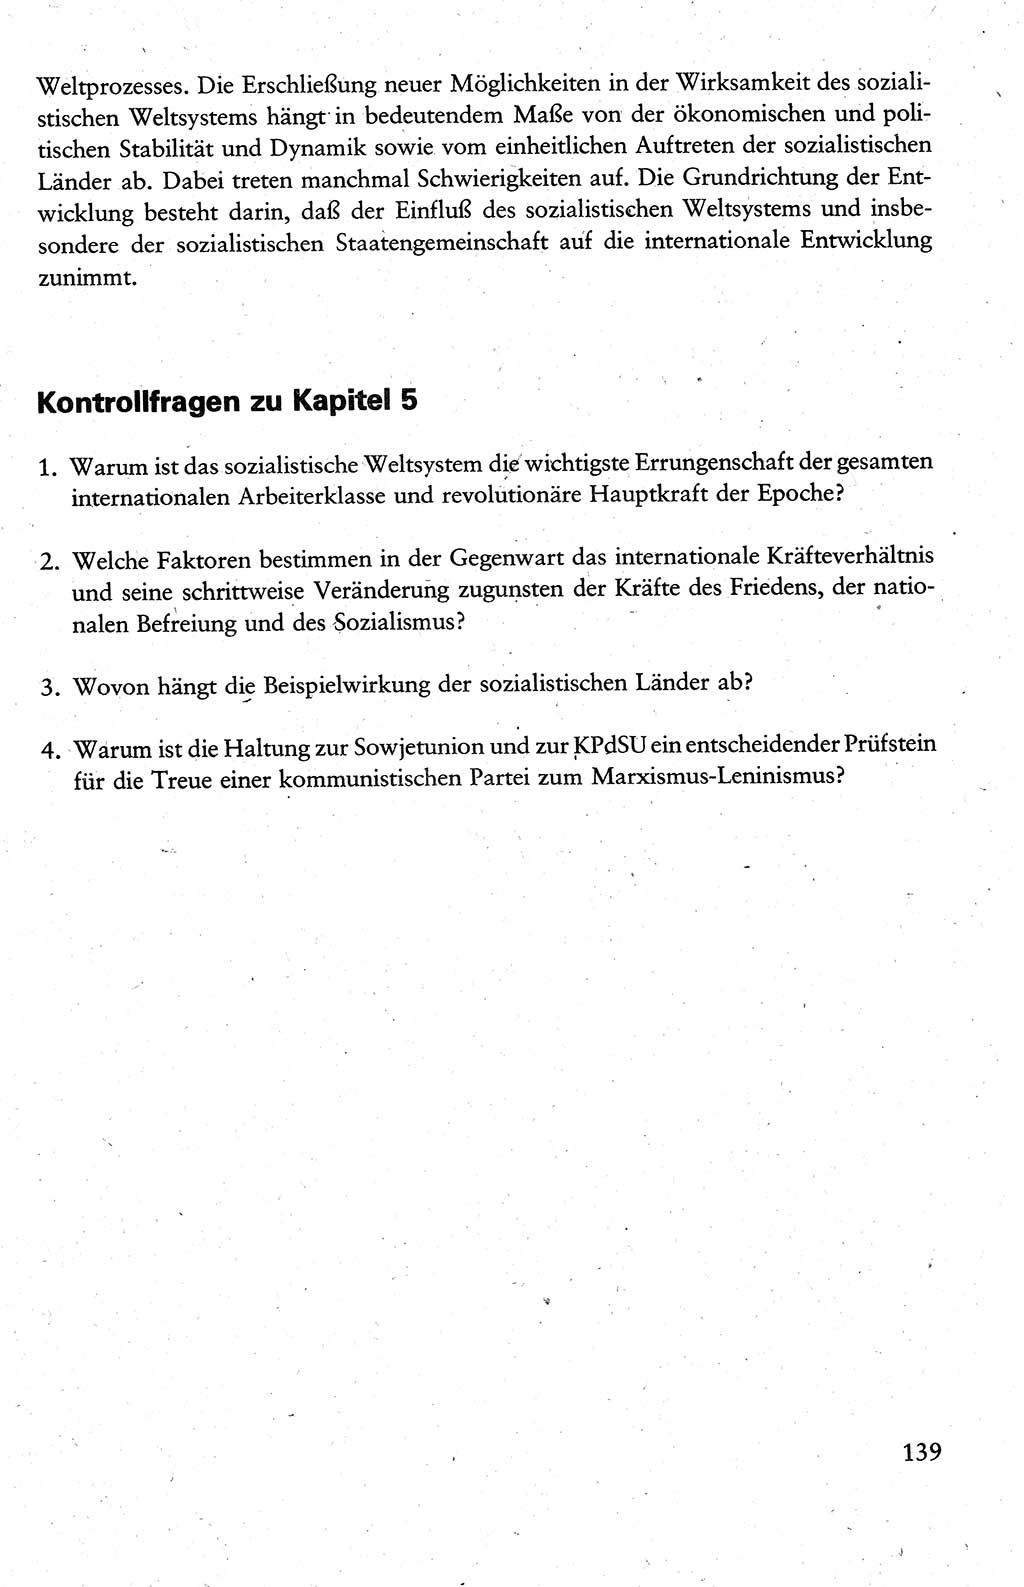 Wissenschaftlicher Kommunismus [Deutsche Demokratische Republik (DDR)], Lehrbuch für das marxistisch-leninistische Grundlagenstudium 1983, Seite 139 (Wiss. Komm. DDR Lb. 1983, S. 139)